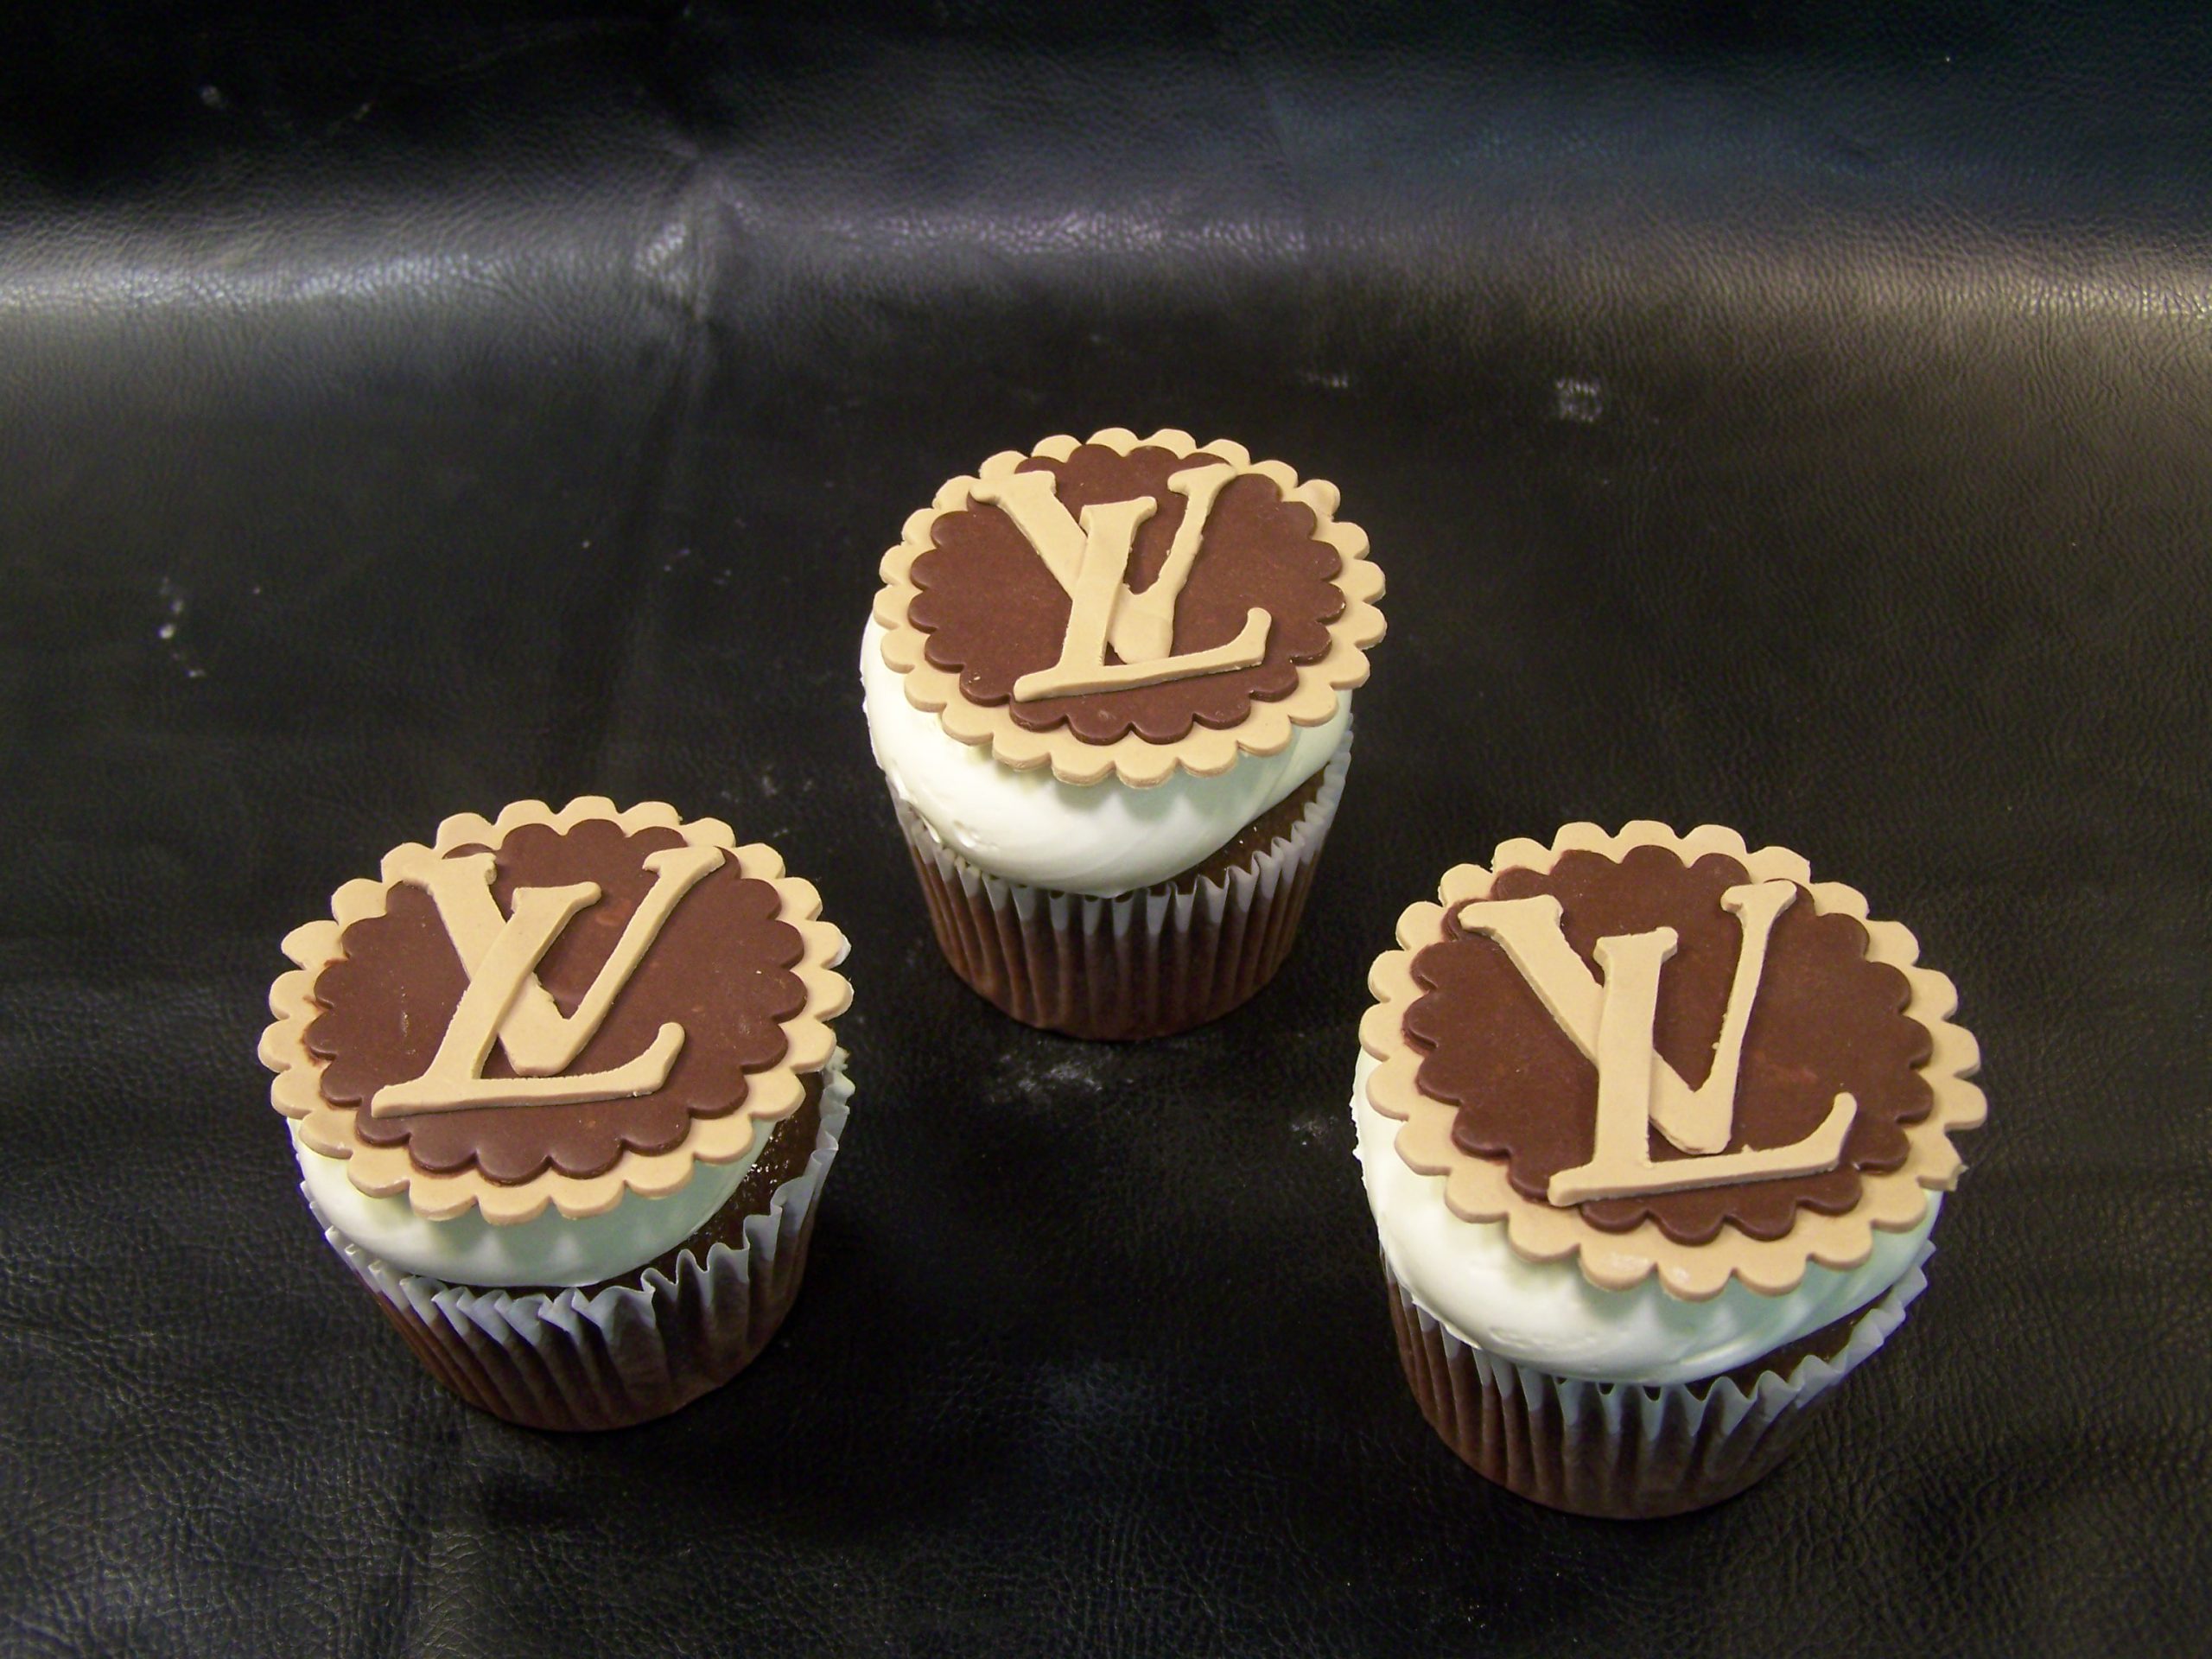 Order Now Louis Vuitton Birthday Cake